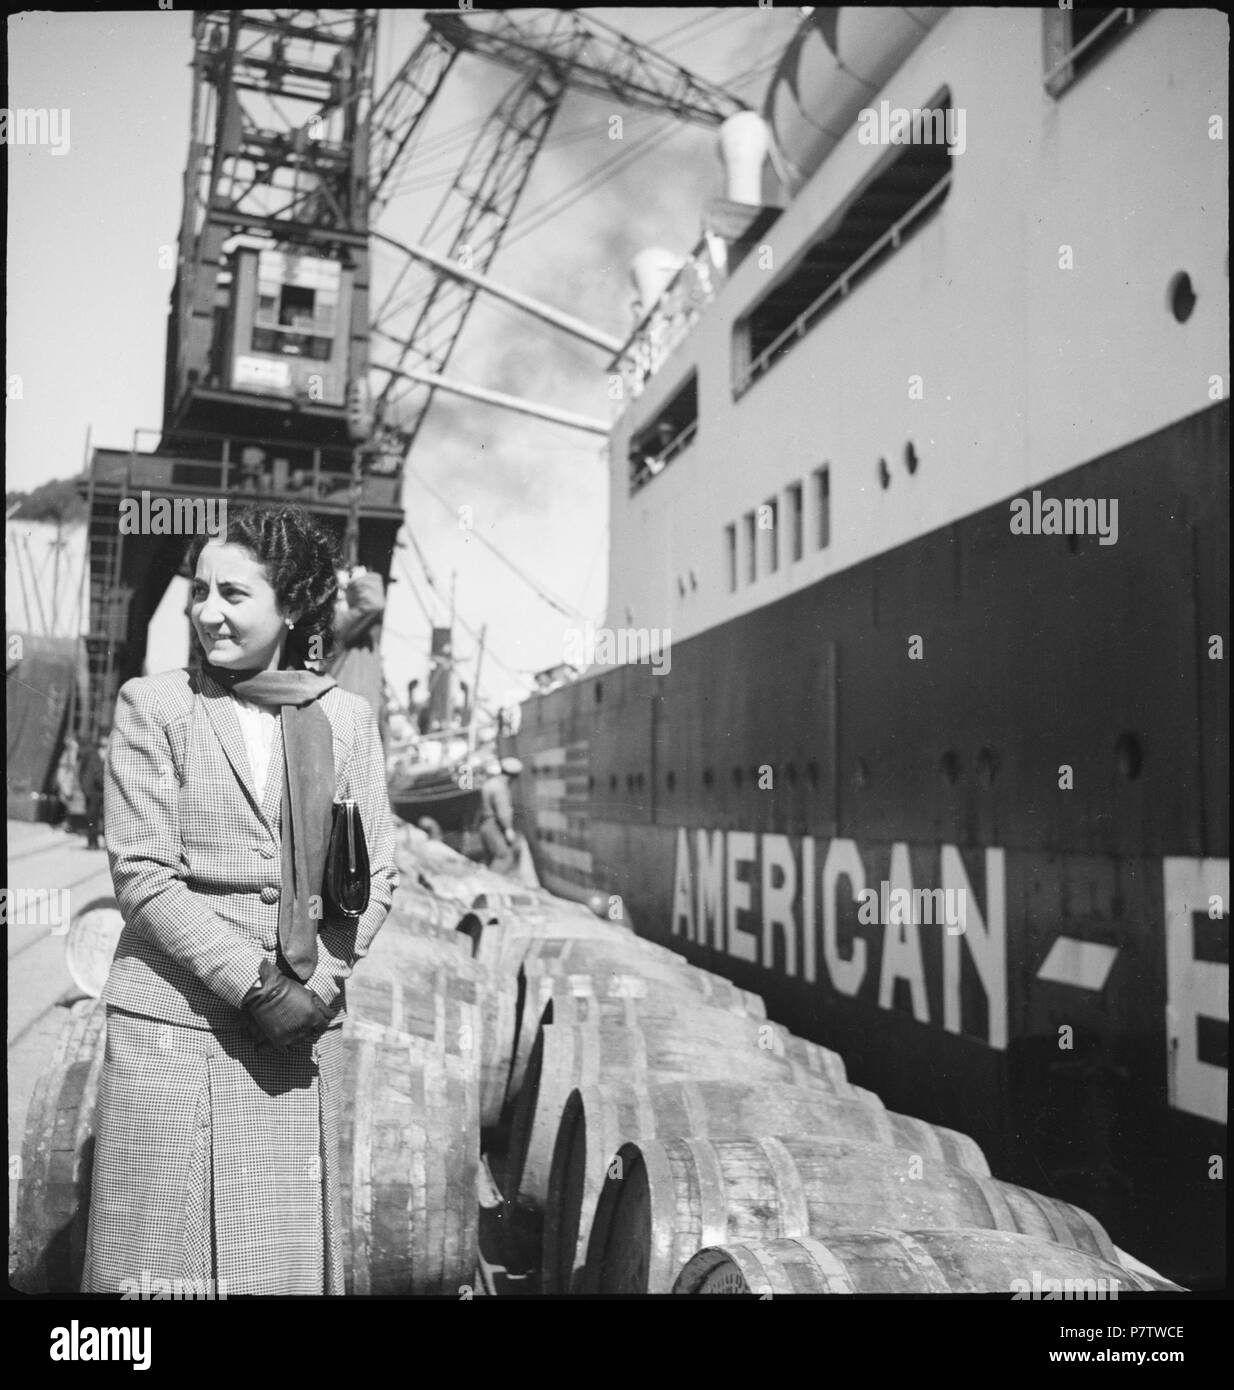 Portugal, Lissabon (Lisboa): Schiff Excambion; Eine Frau neben einem Schiff, das gerade beladen wird. May 1941 79 CH-NB - Portugal, Lissabon (Lisboa)- Schiff Excambion - Annemarie Schwarzenbach - SLA-Schwarzenbach-A-5-24-066 Stock Photo